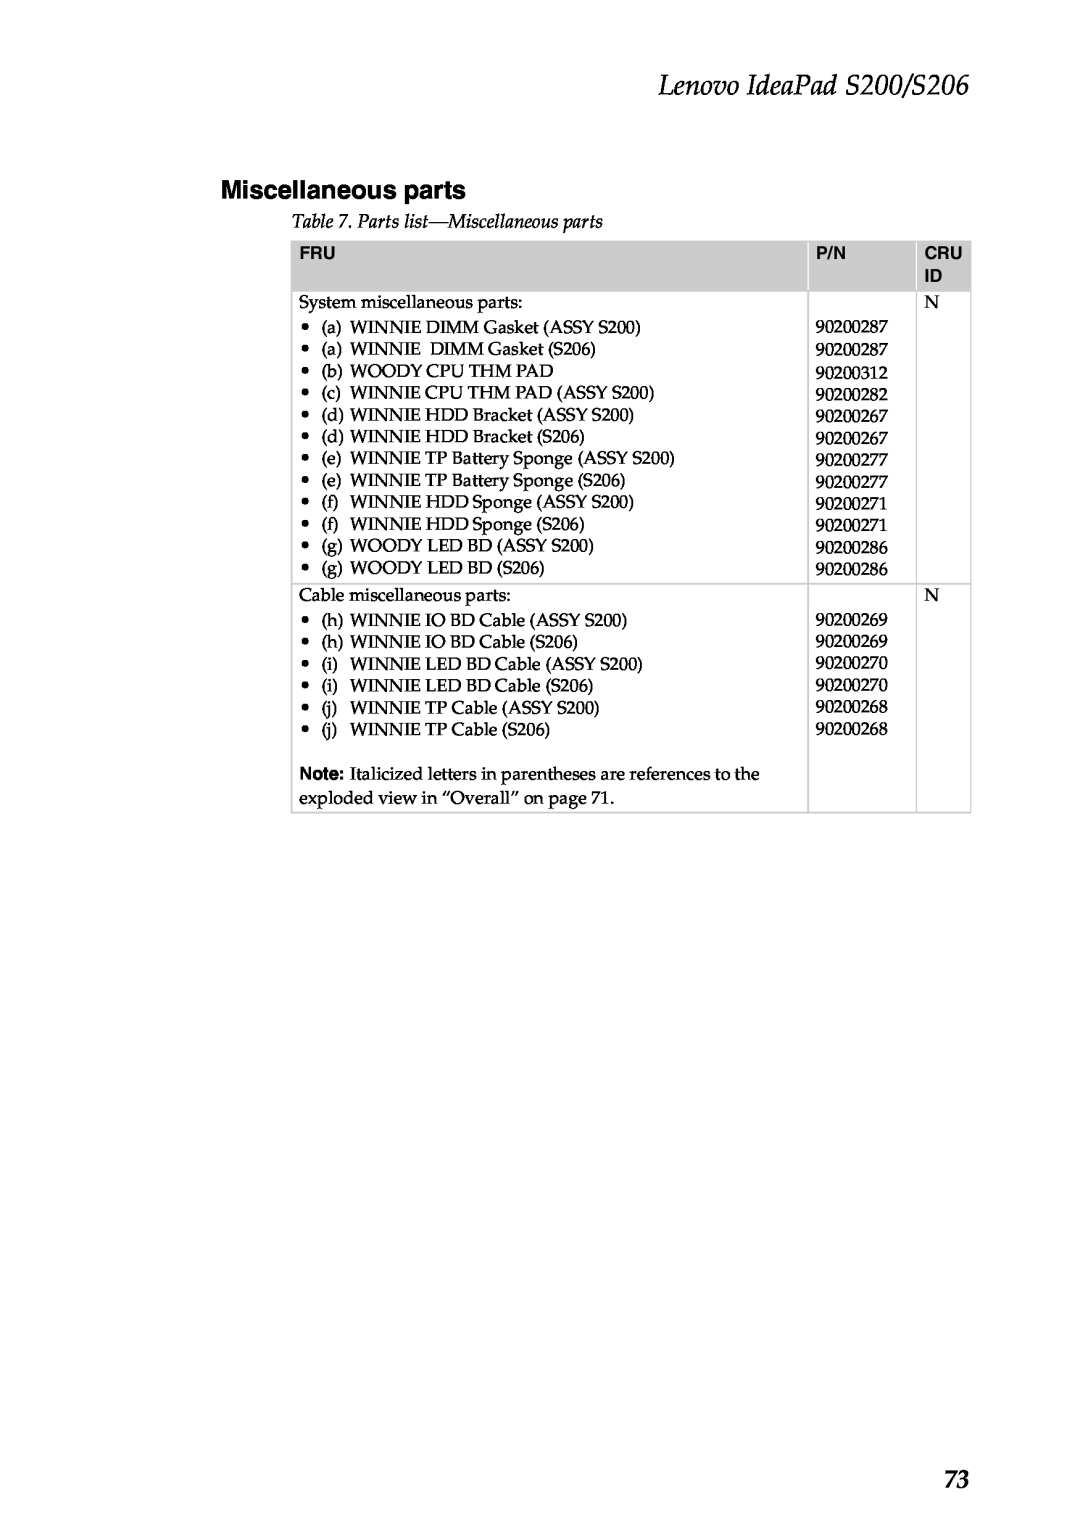 Lenovo manual Miscellaneous parts, Parts list-Miscellaneousparts, Lenovo IdeaPad S200/S206 